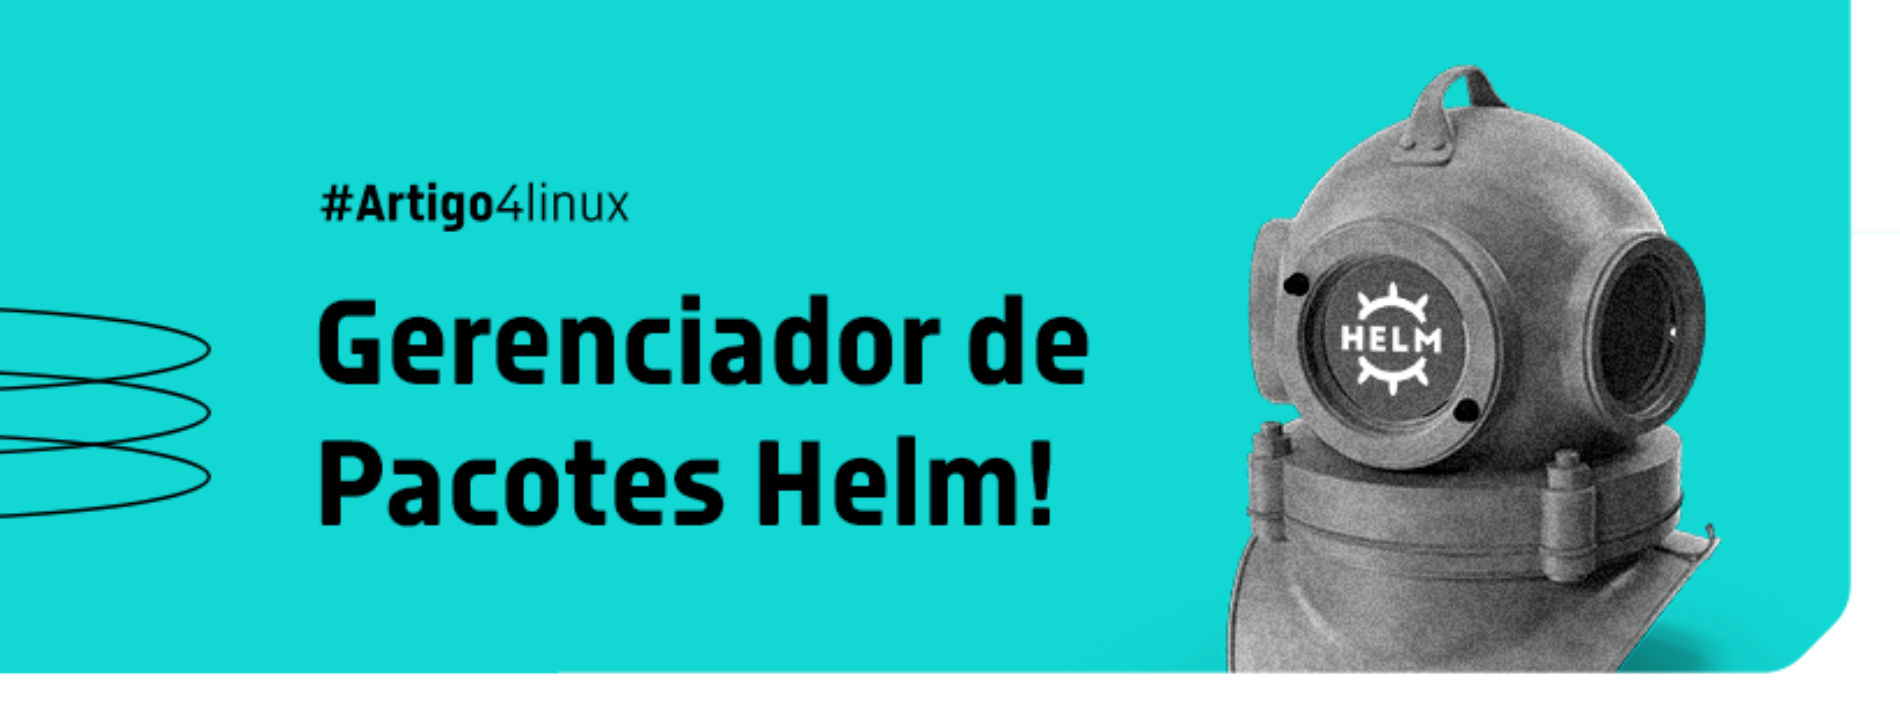 Descubra como o Helm facilita a instalação de aplicações no Kubernetes